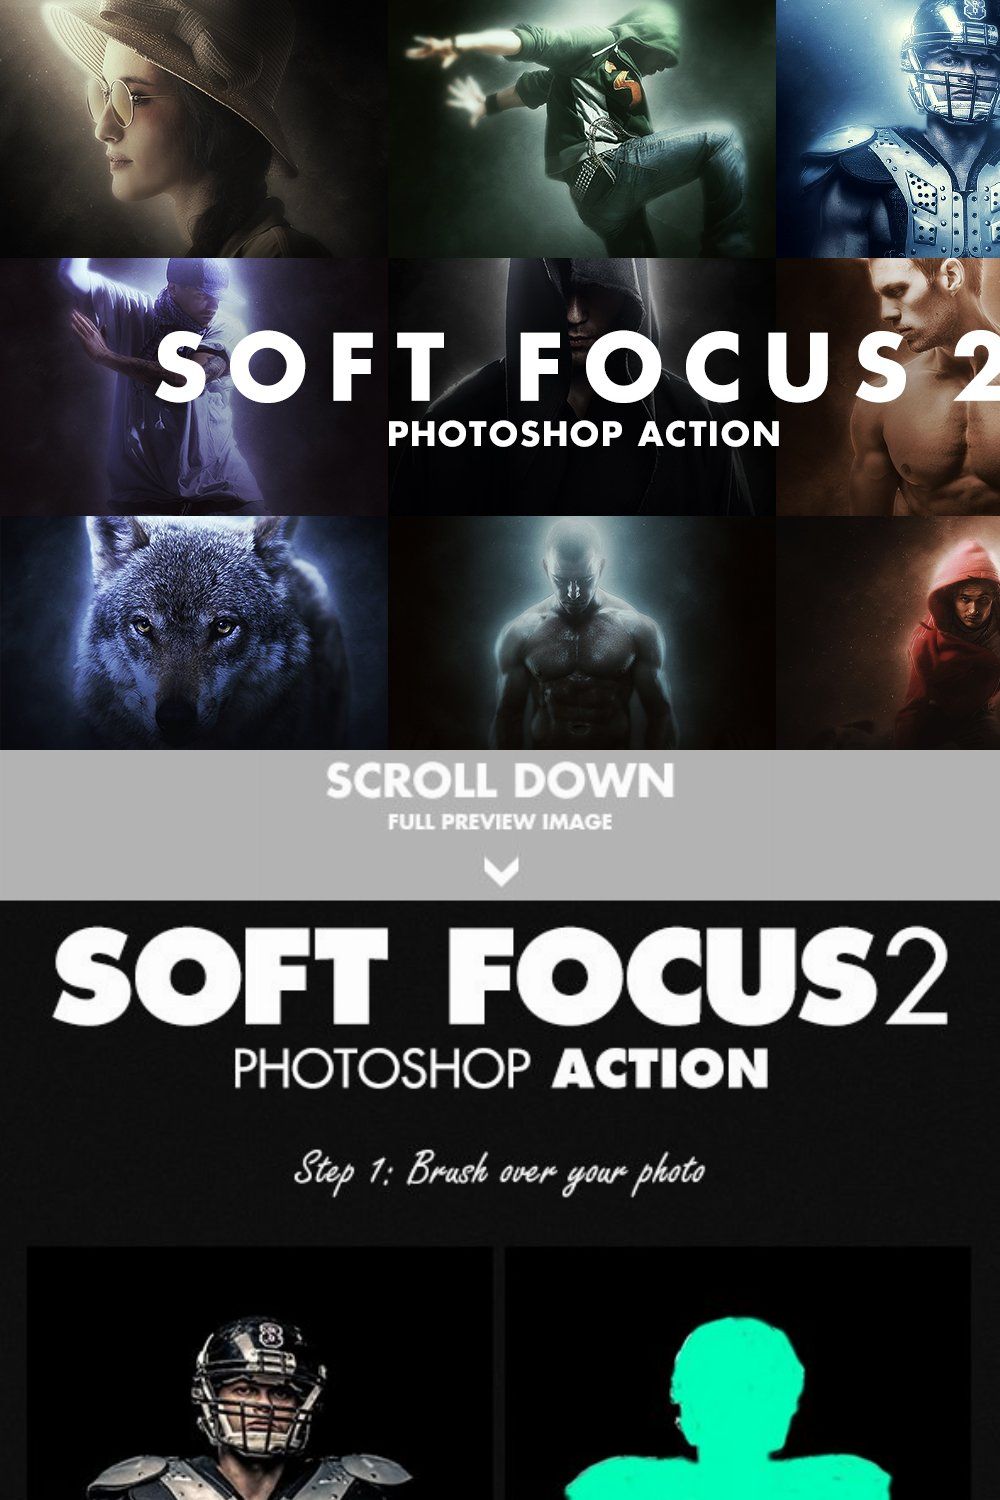 Soft Focus 2 Photoshop Action pinterest preview image.